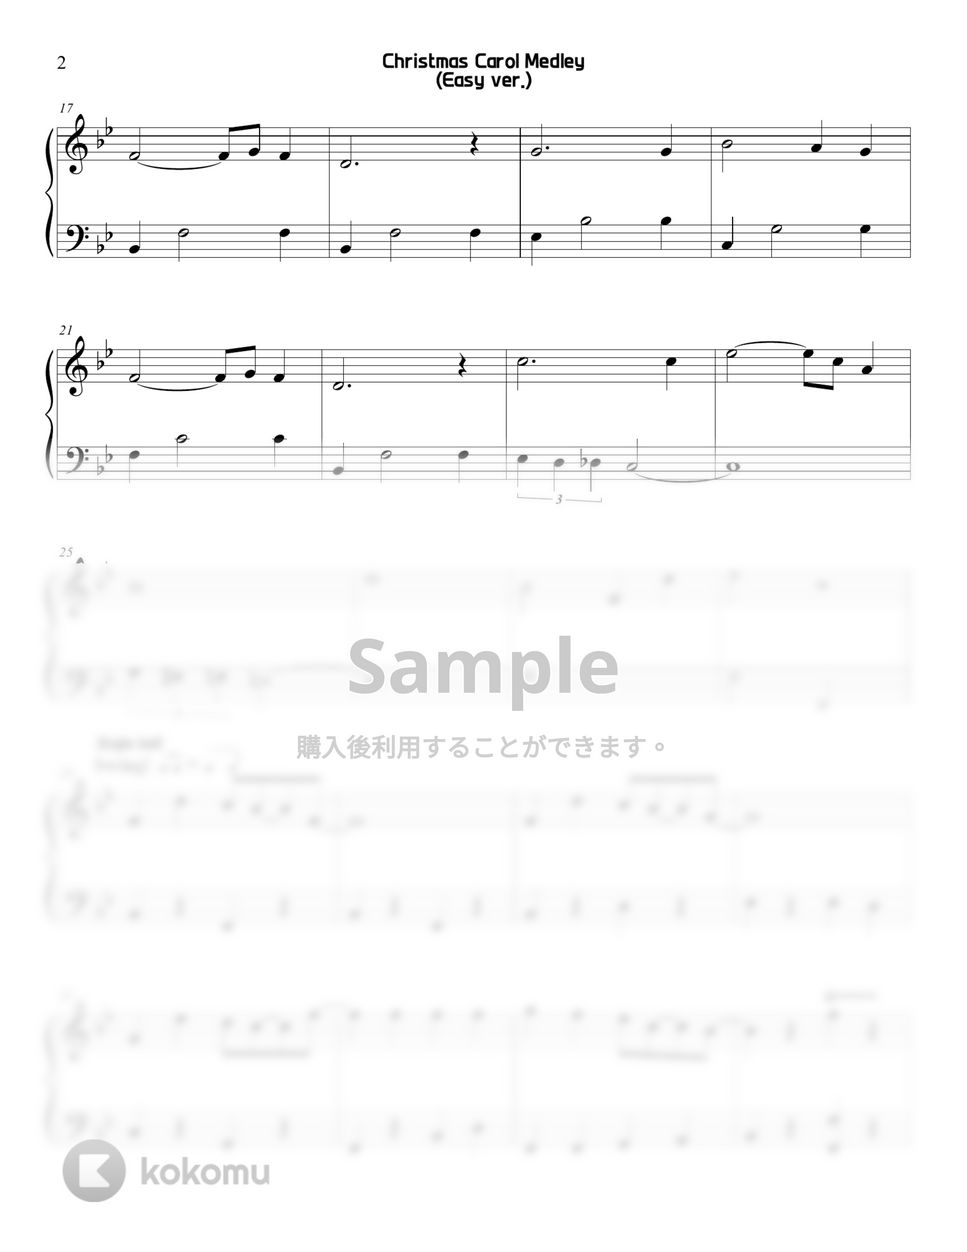 キャロルメドレー - クリスマス (簡単なバージョン) by Sunny Fingers Piano